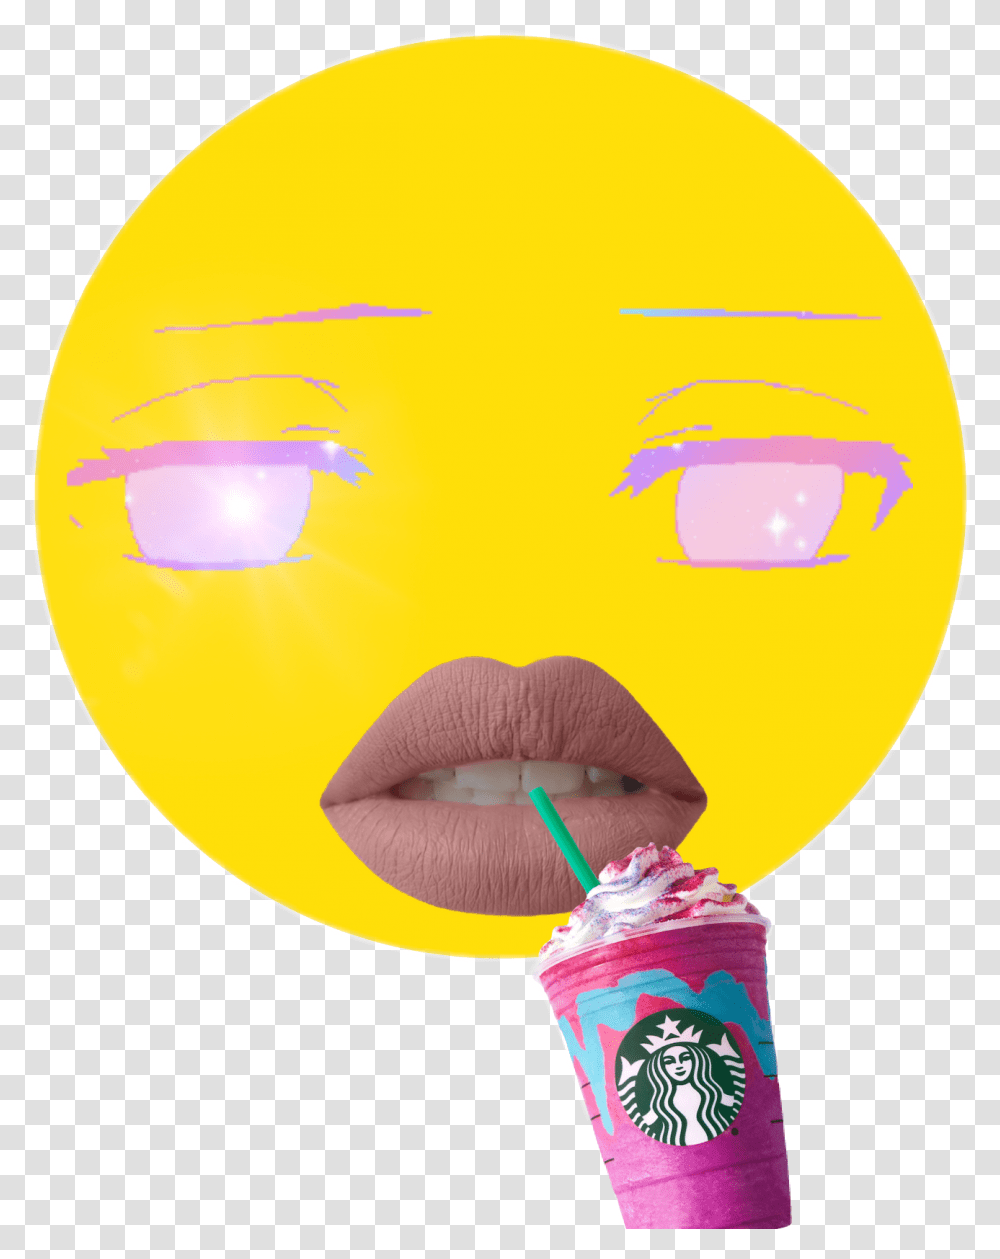 Cringe Face Emoji Anime Eyes Starbucks, Balloon, Mouth, Lip, Beverage Transparent Png